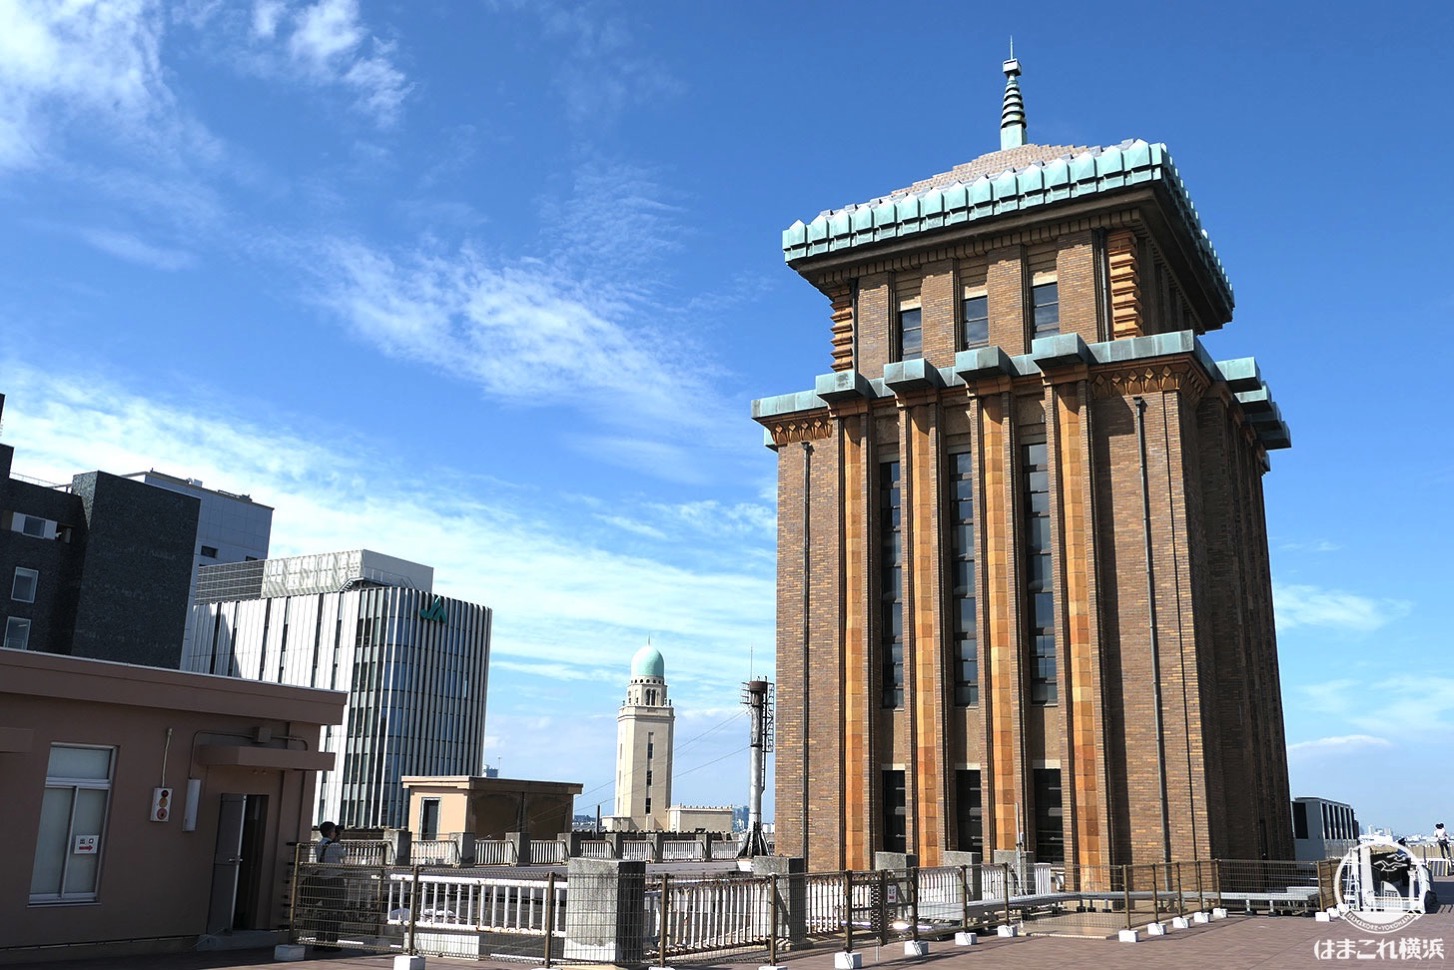 神奈川県庁本庁舎公開 屋上から見たキングの塔